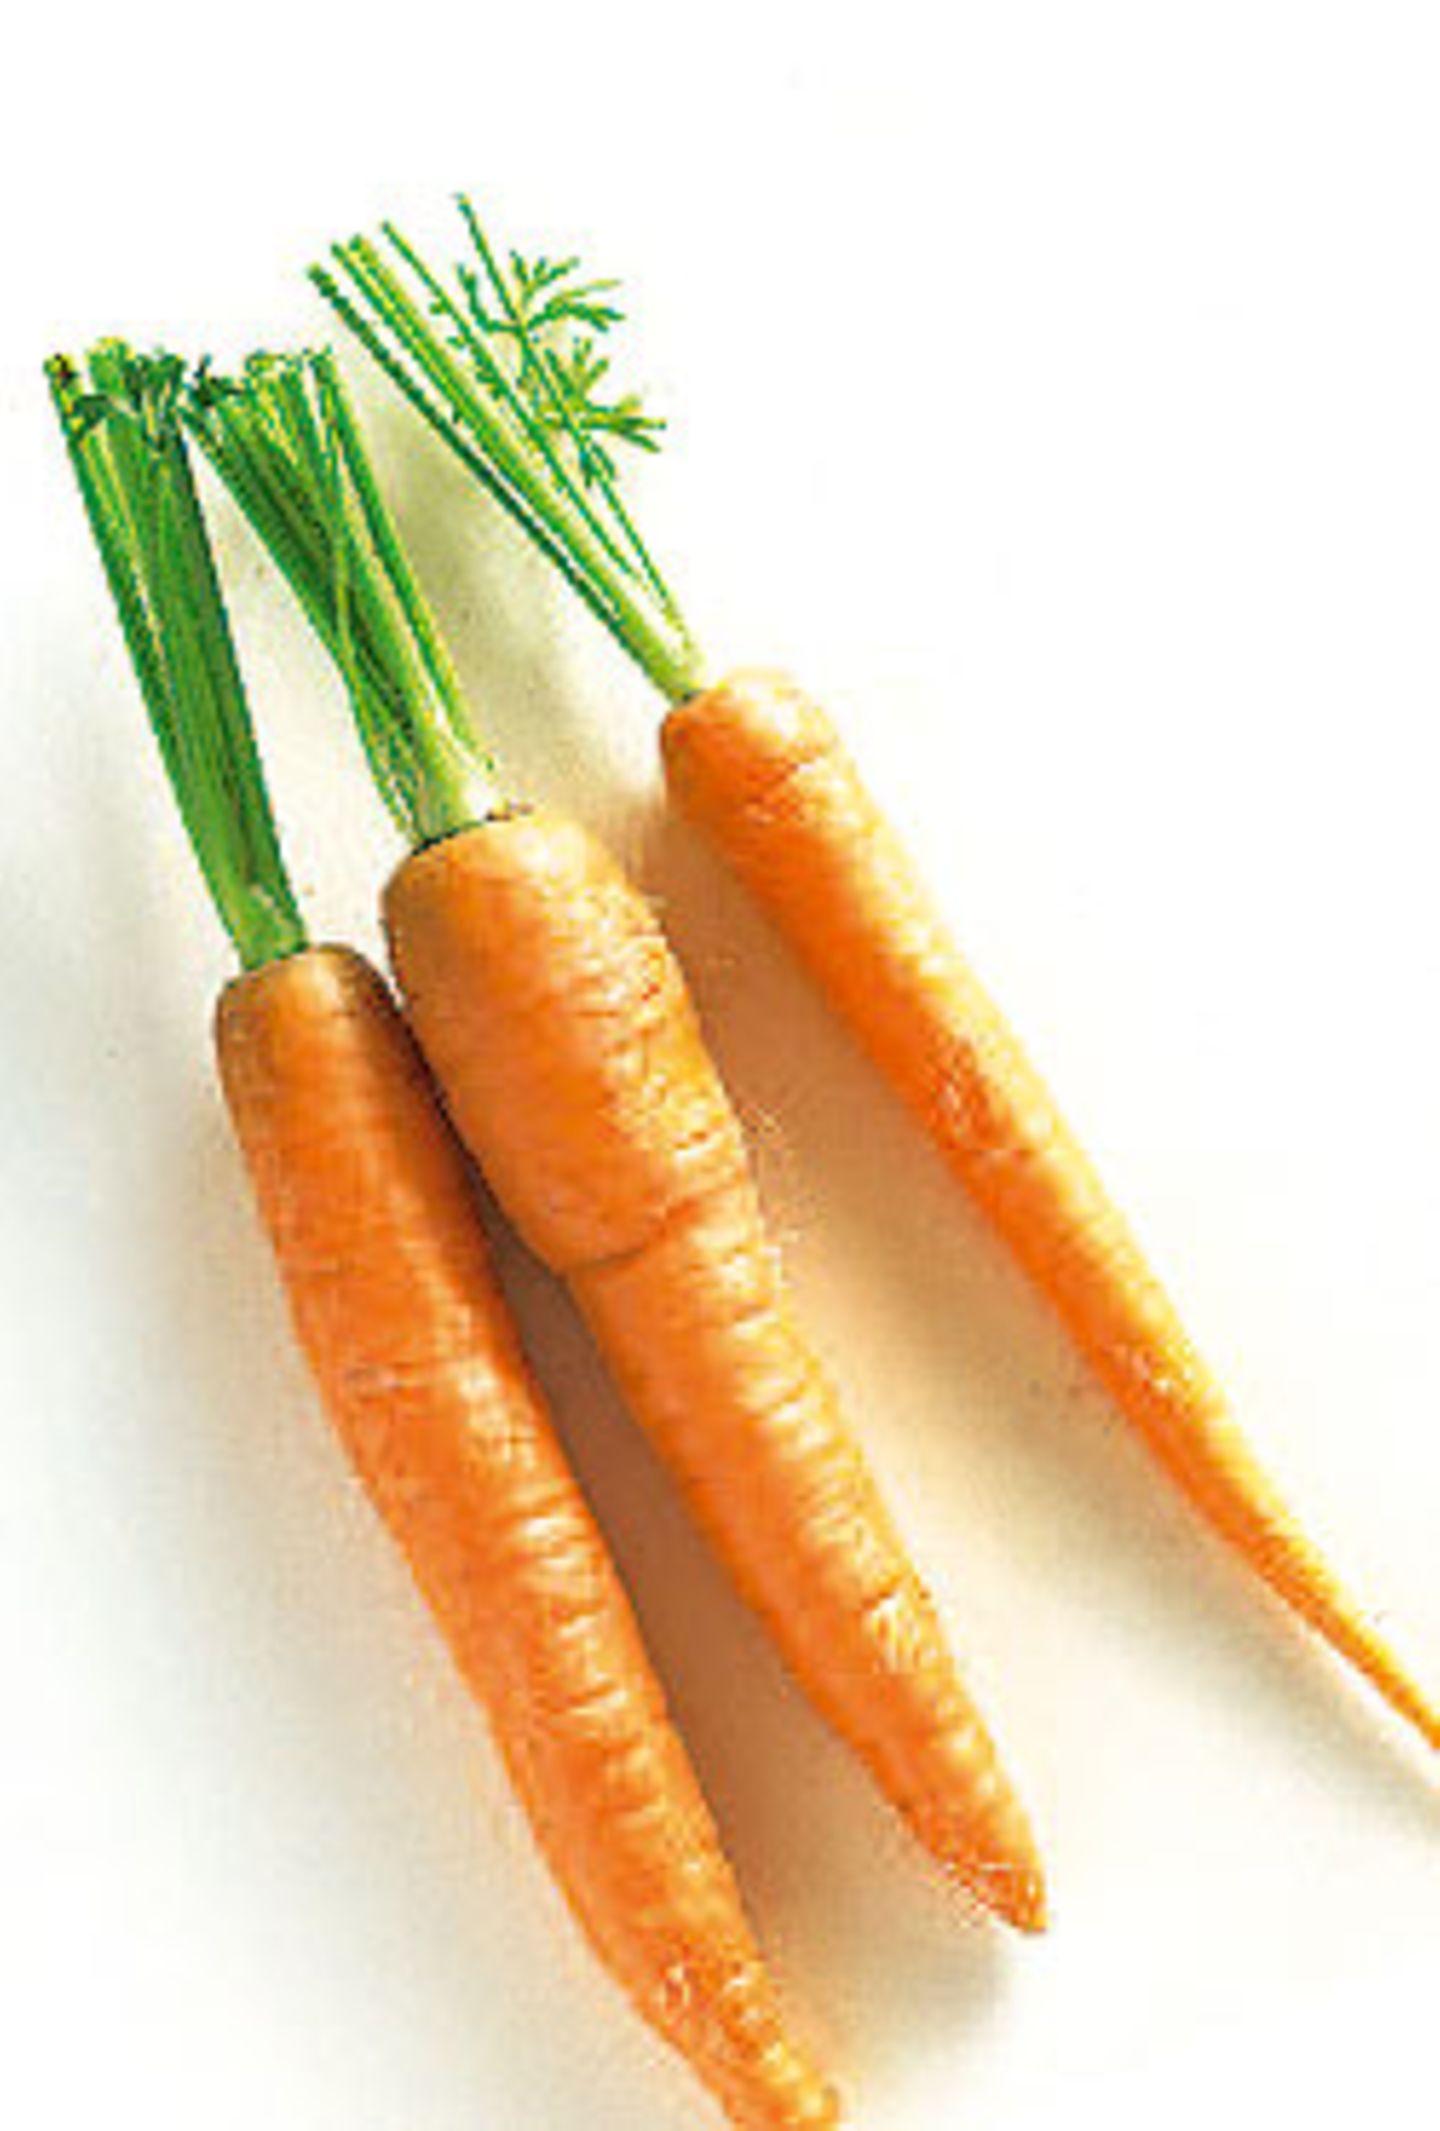 2. Karotten stärken die Konzentration.